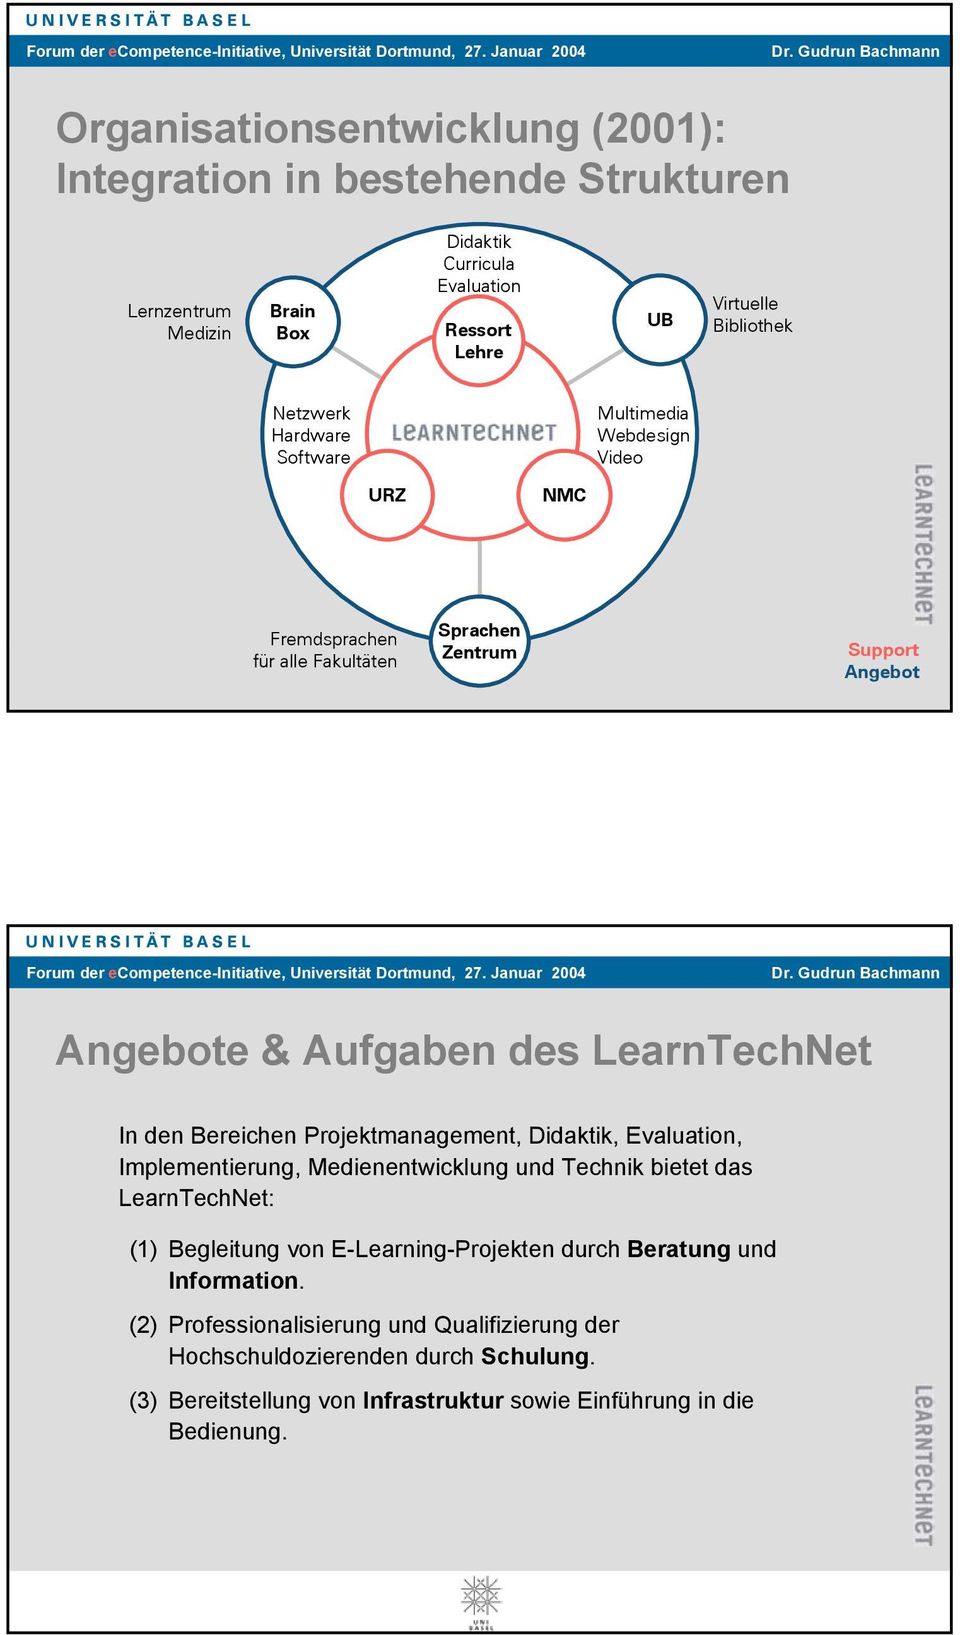 Bereichen Projektmanagement, Didaktik, Evaluation, Implementierung, Medienentwicklung und Technik bietet das LearnTechNet: (1) Begleitung von E-Learning-Projekten durch